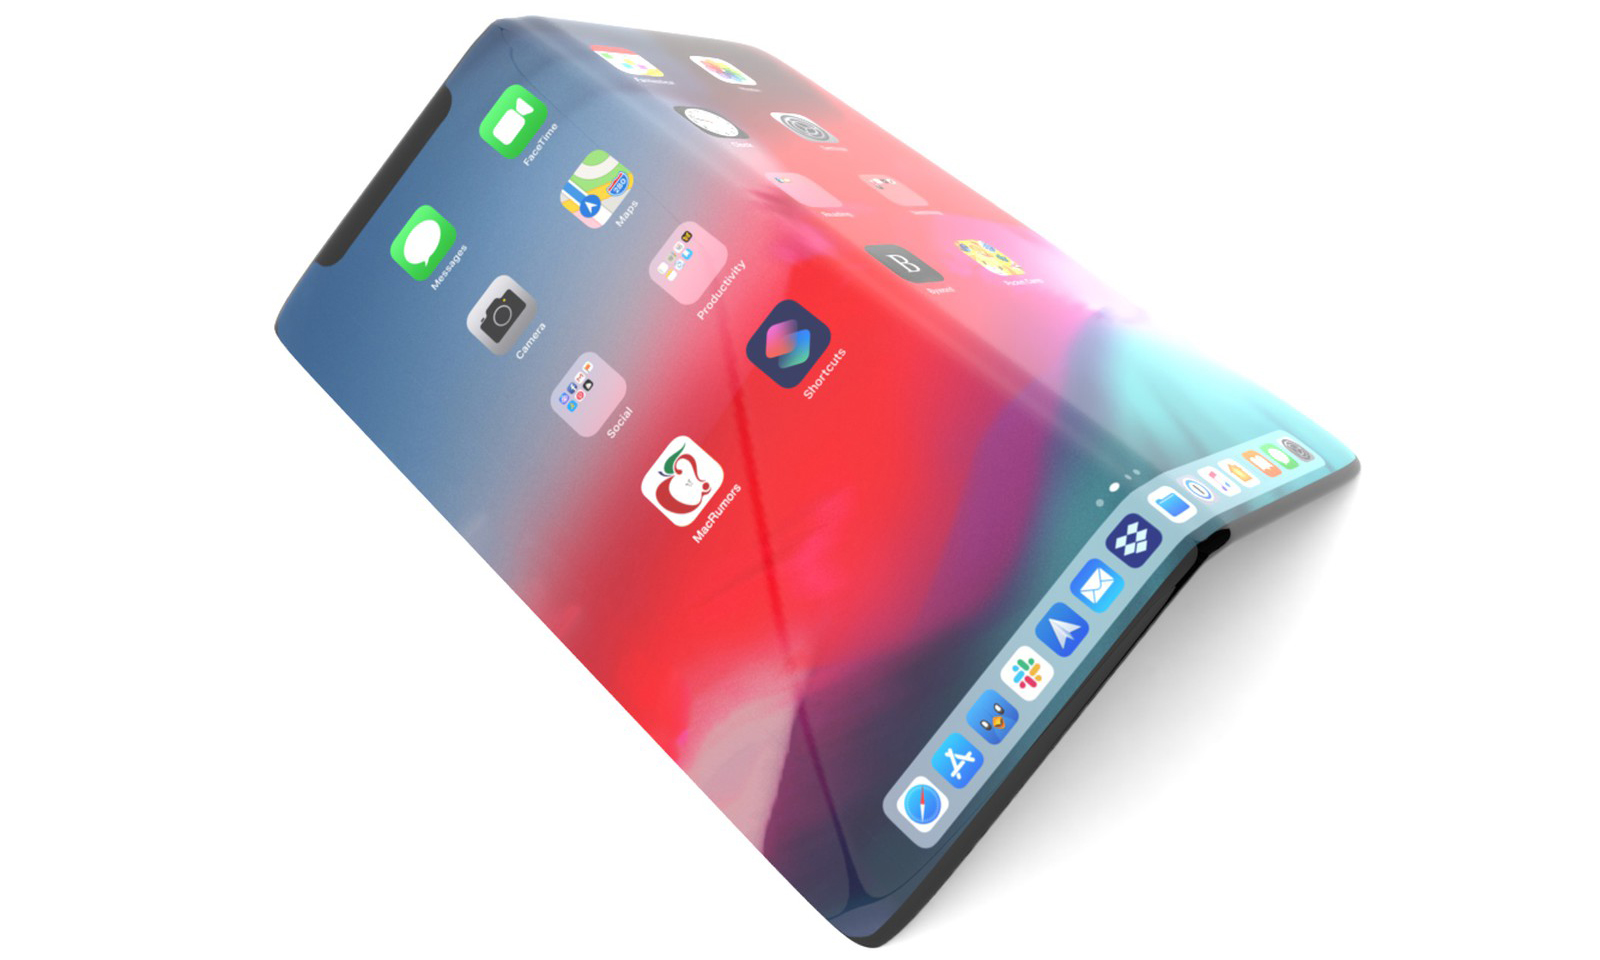 2022 见？爆料称苹果已将折叠屏 iPhone 送至富士康测试